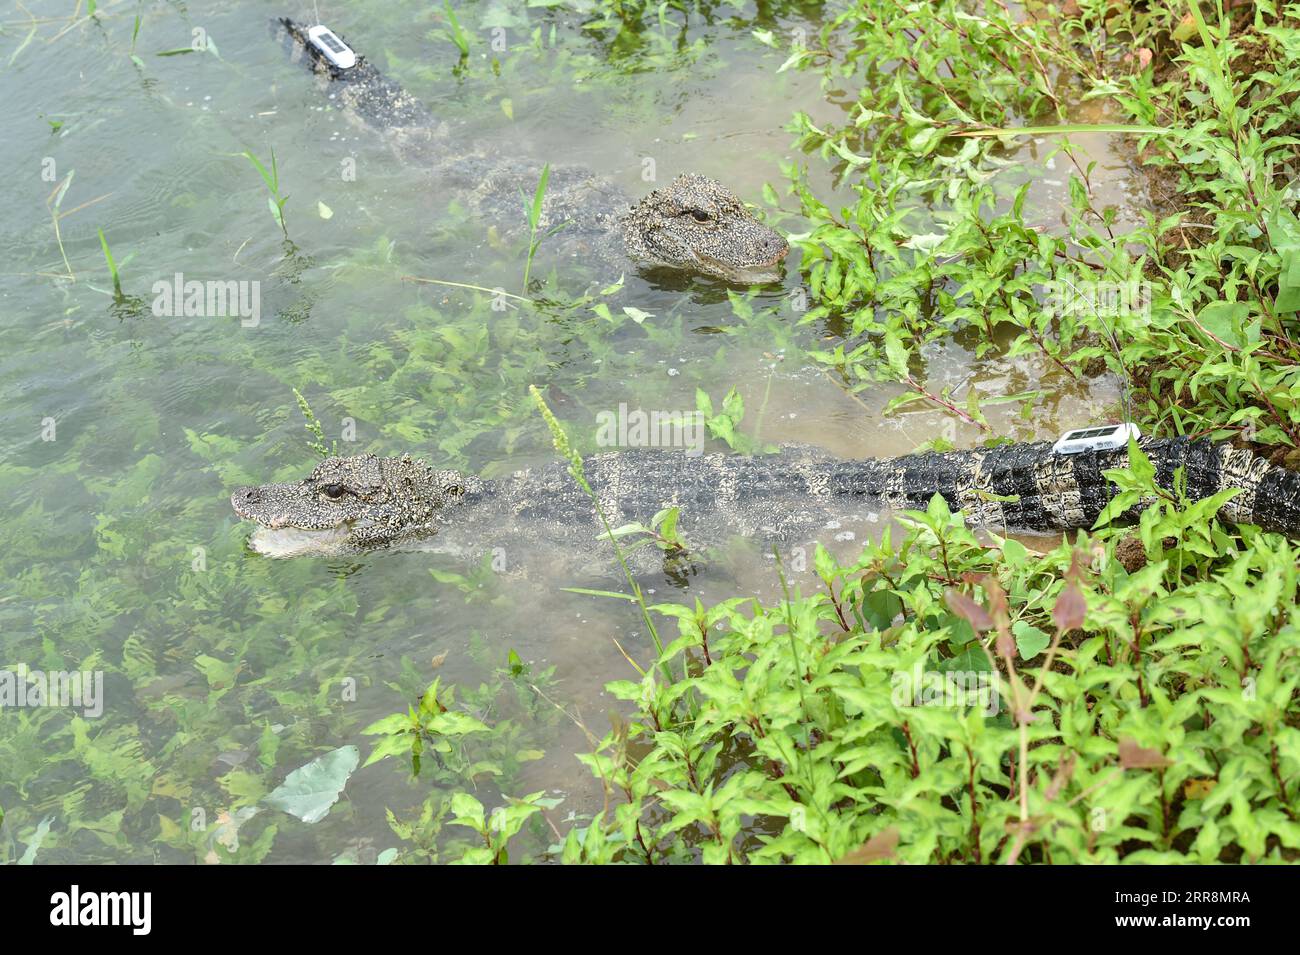 210513 -- JINGXIAN, 13 maggio 2021 -- foto scattata il 13 maggio 2021 mostra gli alligatori dello Yangtze in un punto di rilascio della riserva naturale nazionale degli alligatori cinesi di Anhui nella contea di Jingxian, nella provincia di Anhui della Cina orientale. La riserva naturale di giovedì ha rilasciato 51 alligatori Yangtze allevati artificialmente, noti anche come alligatori cinesi, in natura, con altri 479 previsti per essere liberati in diversi punti di rilascio nella riserva. La riserva naturale ha iniziato a reintrodurre i rettili in via di estinzione in natura dal 2003, e a partire dal 2020, un totale di 508 alligatori cinesi sono stati rilasciati in 16 batche Foto Stock